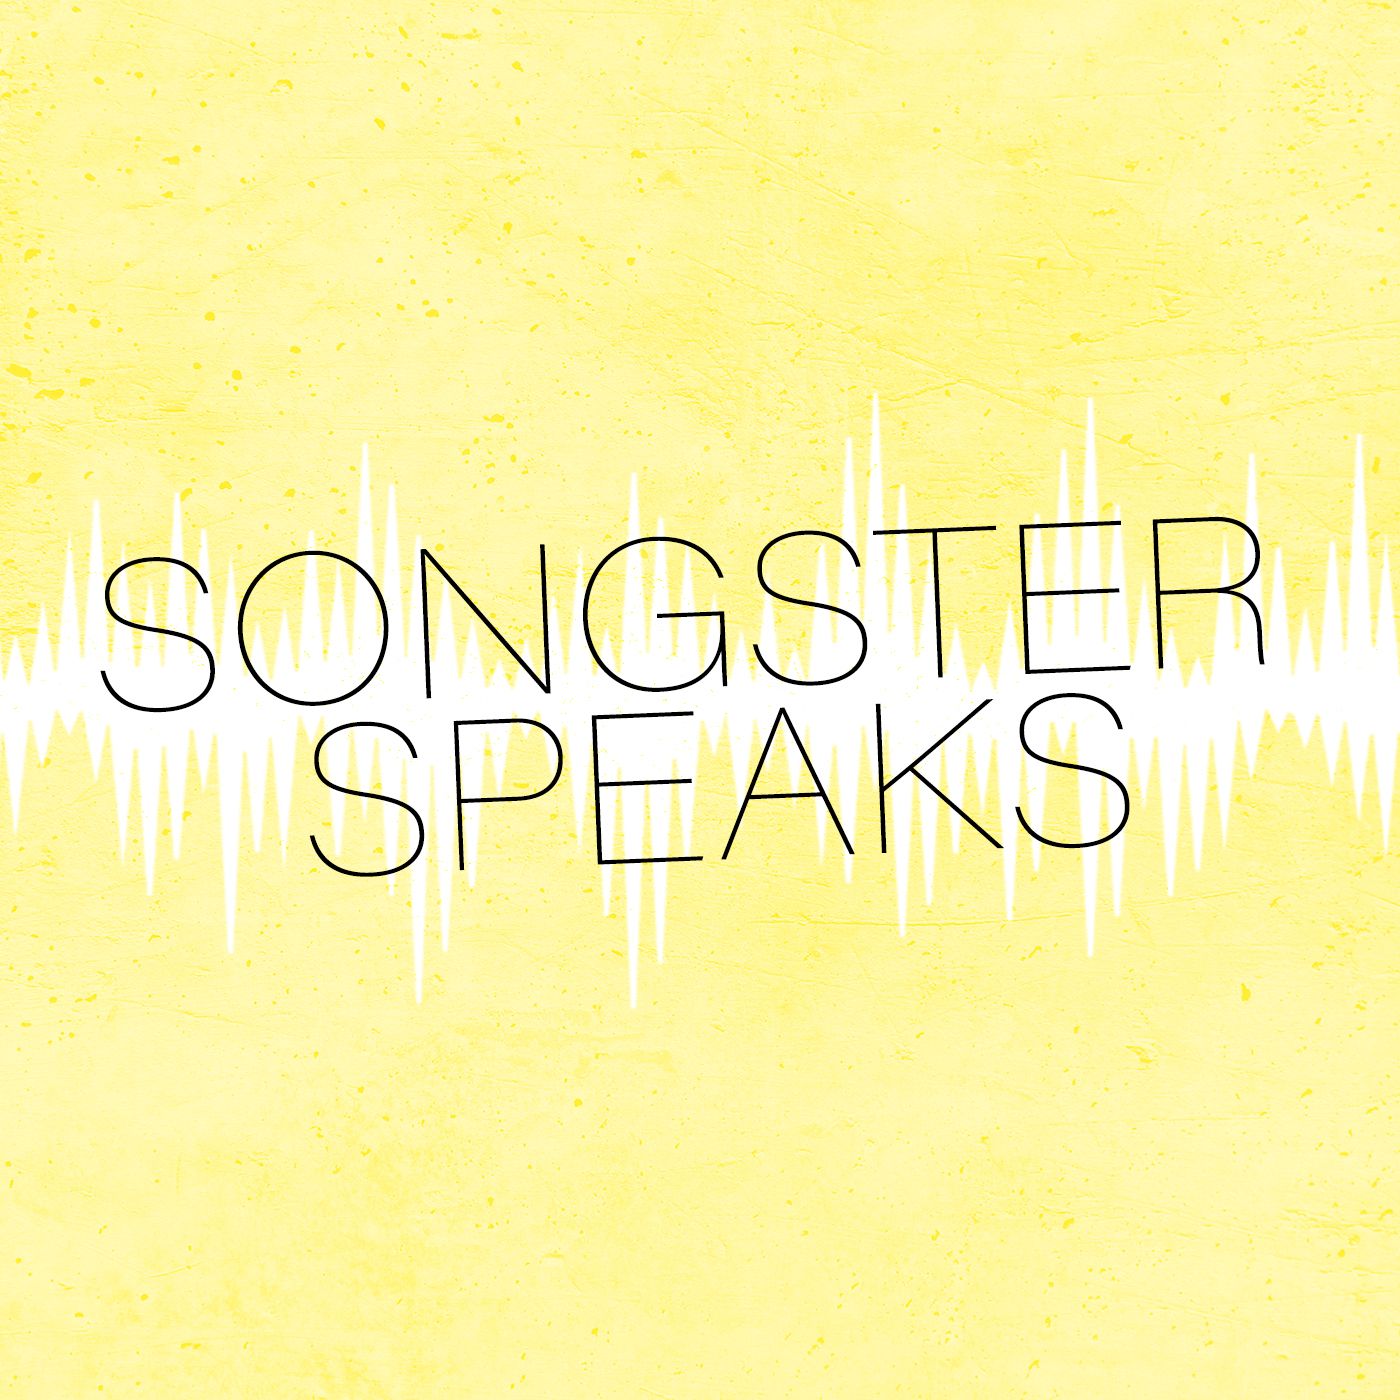 Songster Speaks